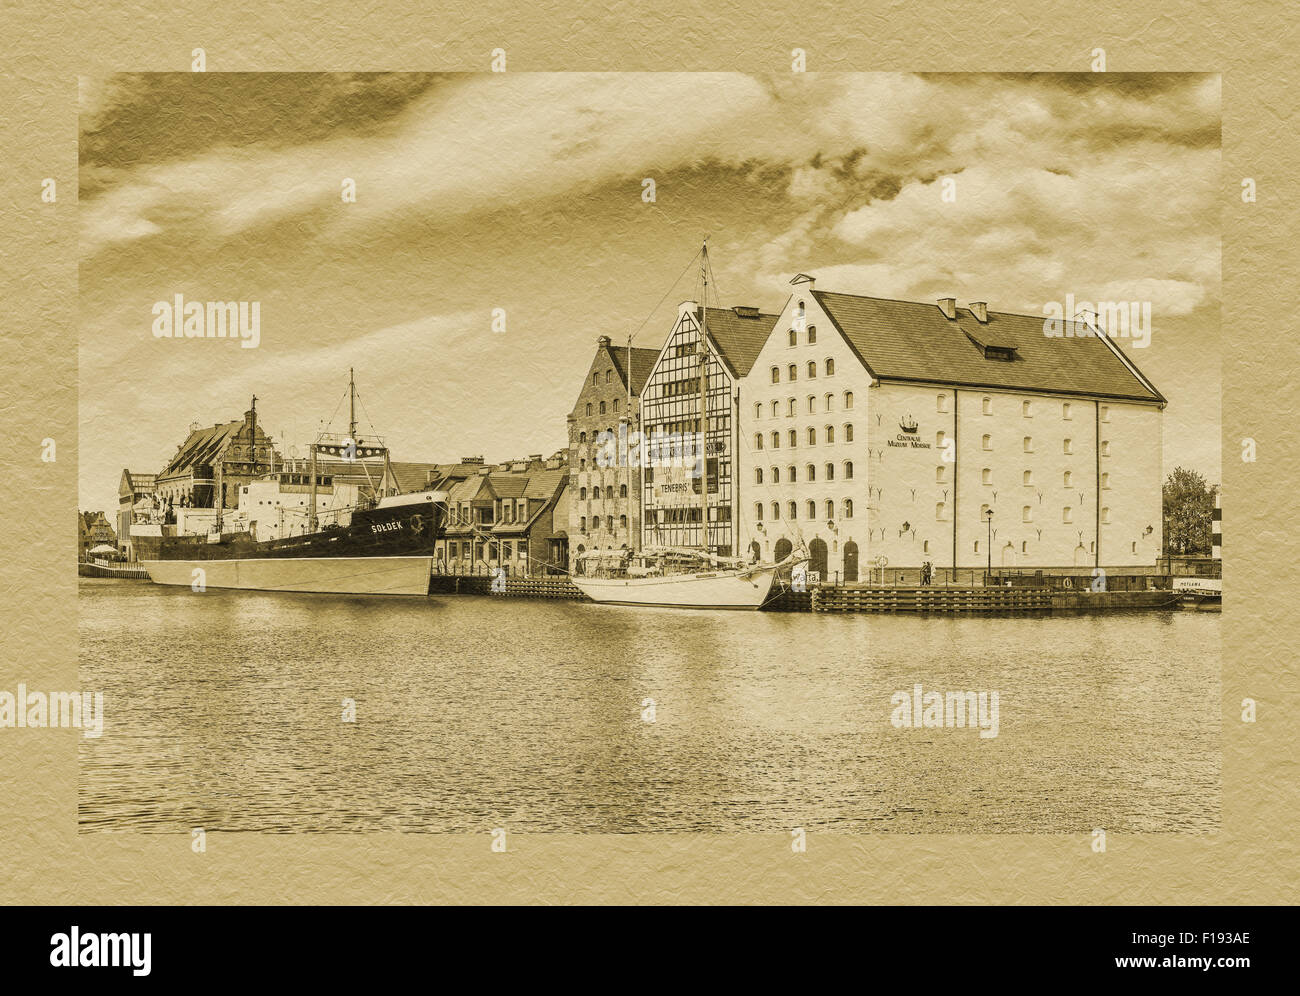 Blick auf die Mottlau, das National Maritime Museum und das Museumsschiff Soldek, Danzig, Pommern, Polen, Europa Stockfoto